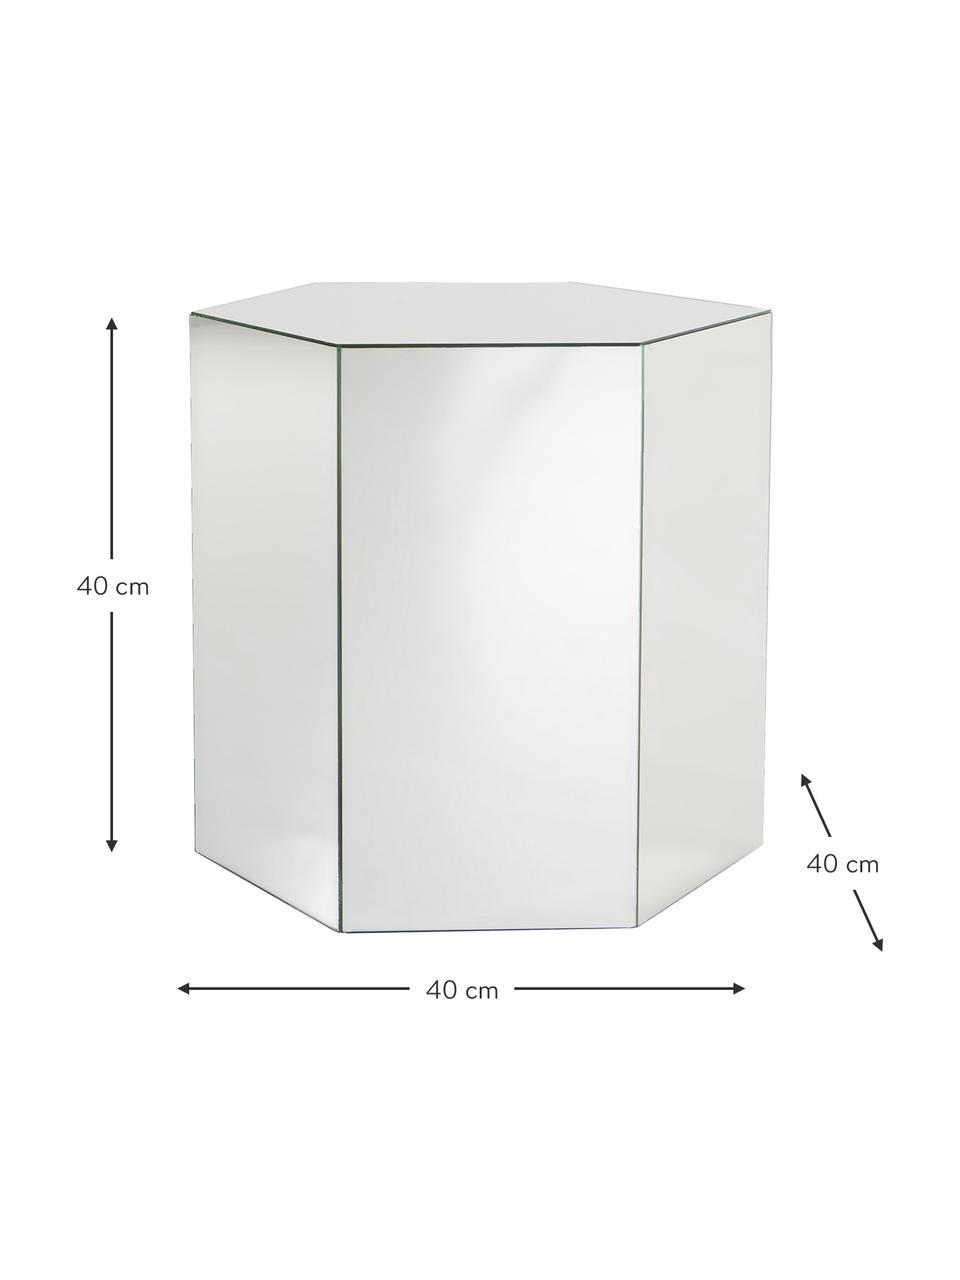 Skleněný odkládací stolek se zrcadlovým efektem Scrape, MDF deska (dřevovláknitá deska střední hustoty), zrcadlo, Zrcadlové sklo, Š 40 cm, V 40 cm